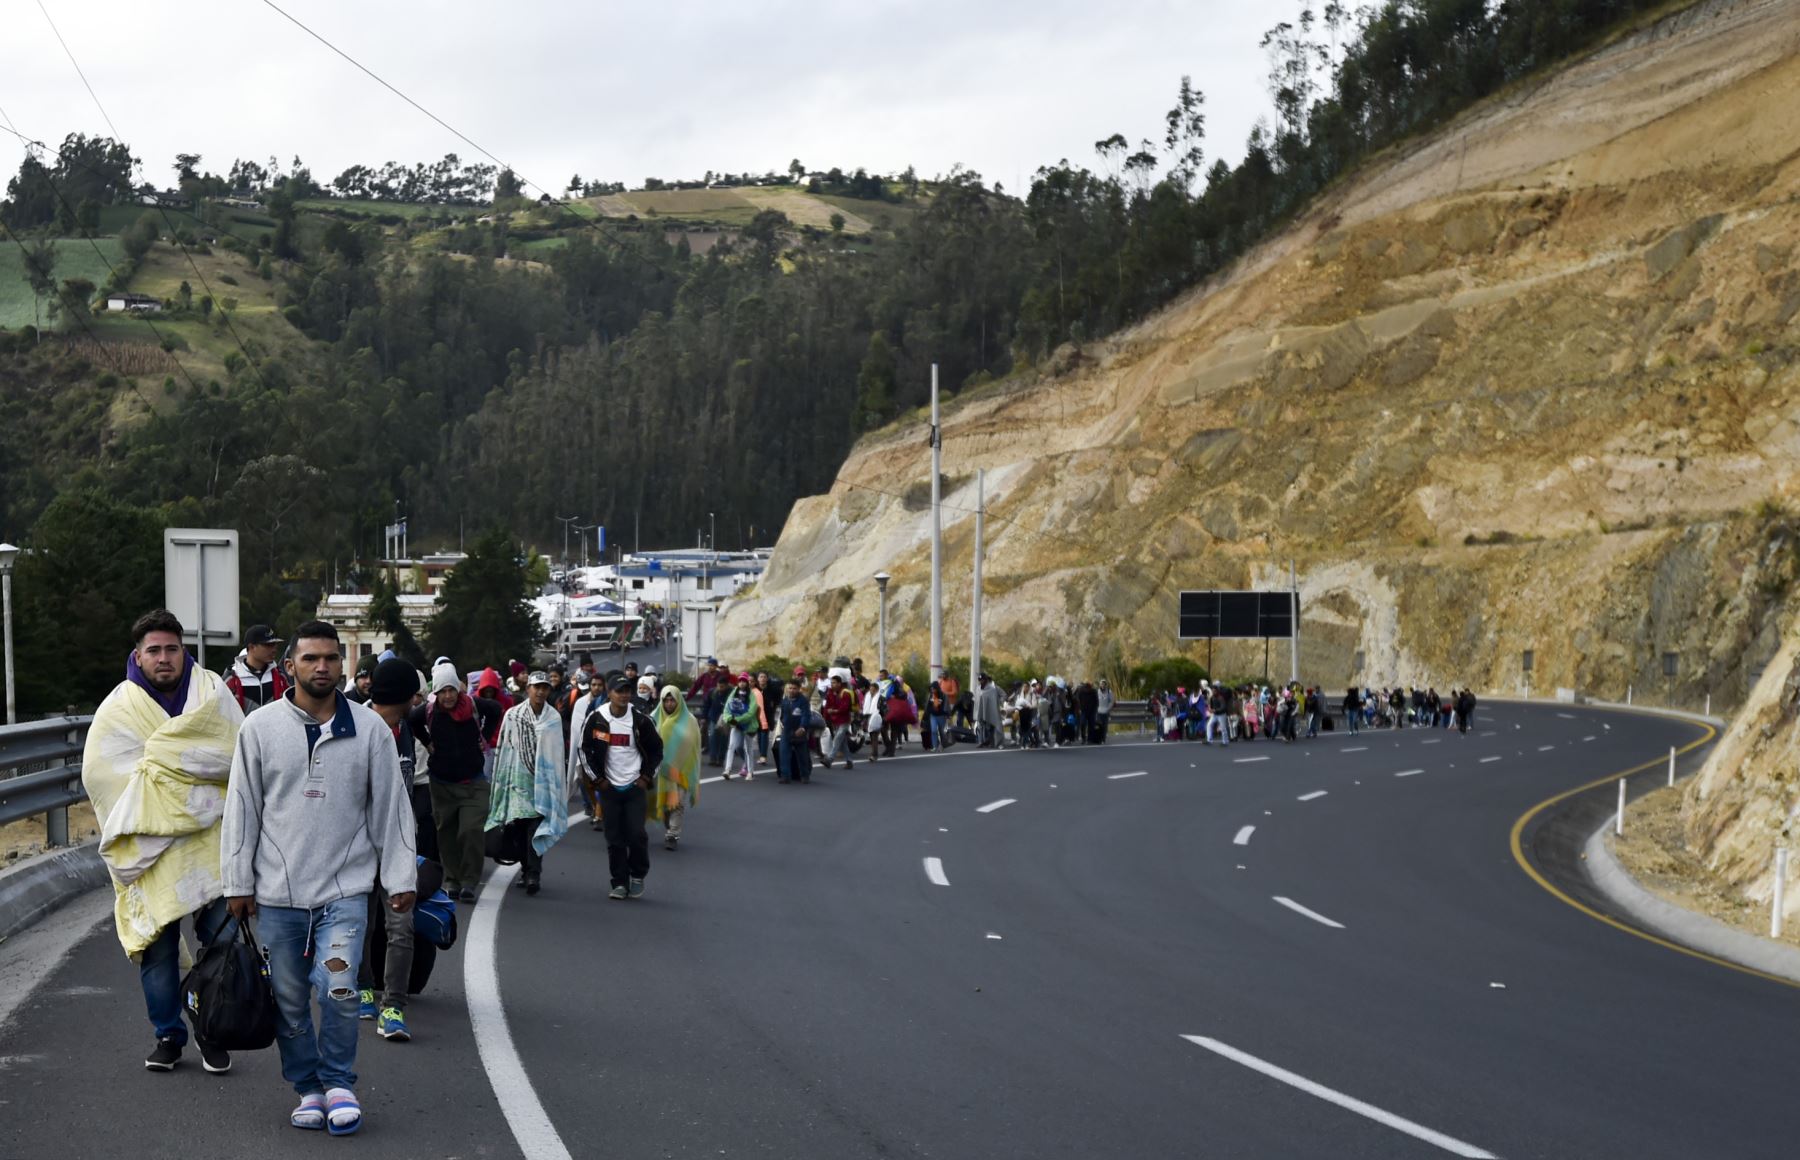 Los venezolanos que se dirigen a Perú caminan a lo largo de la carretera Panamericana en Tulcán, Ecuador, después de cruzar desde Colombia, el 21 de agosto de 2018. AFP